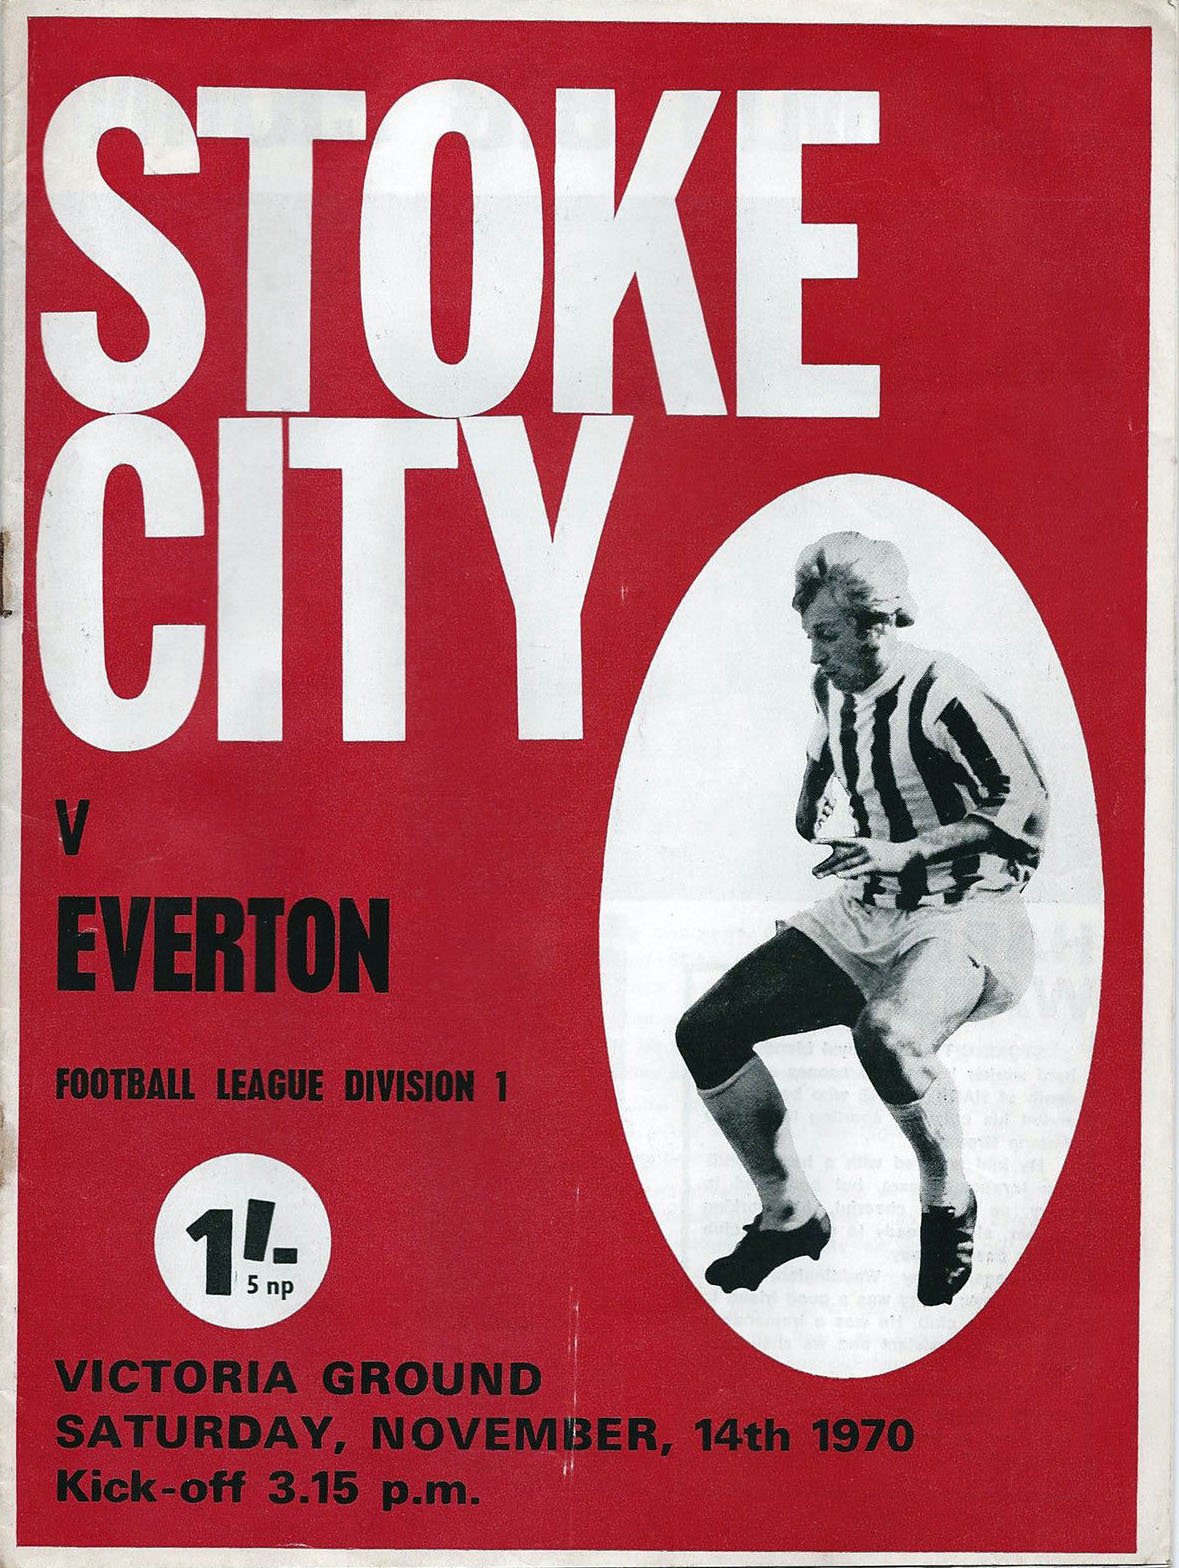 Stoke City vs. Everton (November 14, 1970)